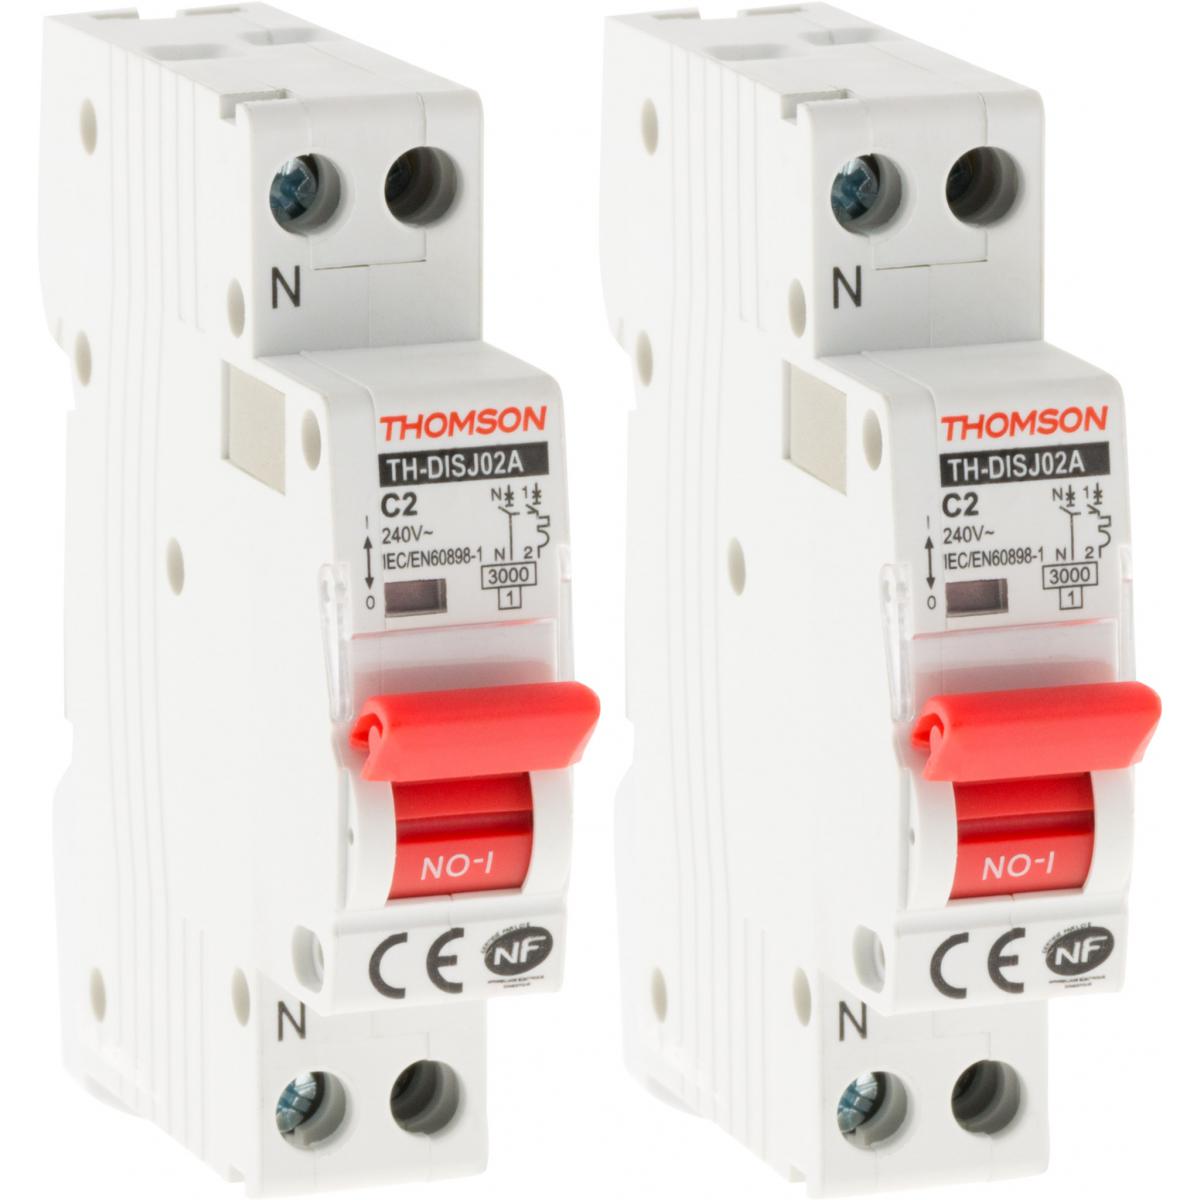 Thomson - Lot de 2 disjoncteurs à vis PH+N Thomson - Pouvoir de coupure 4.5KA - 2A NF - Coupe-circuits et disjoncteurs